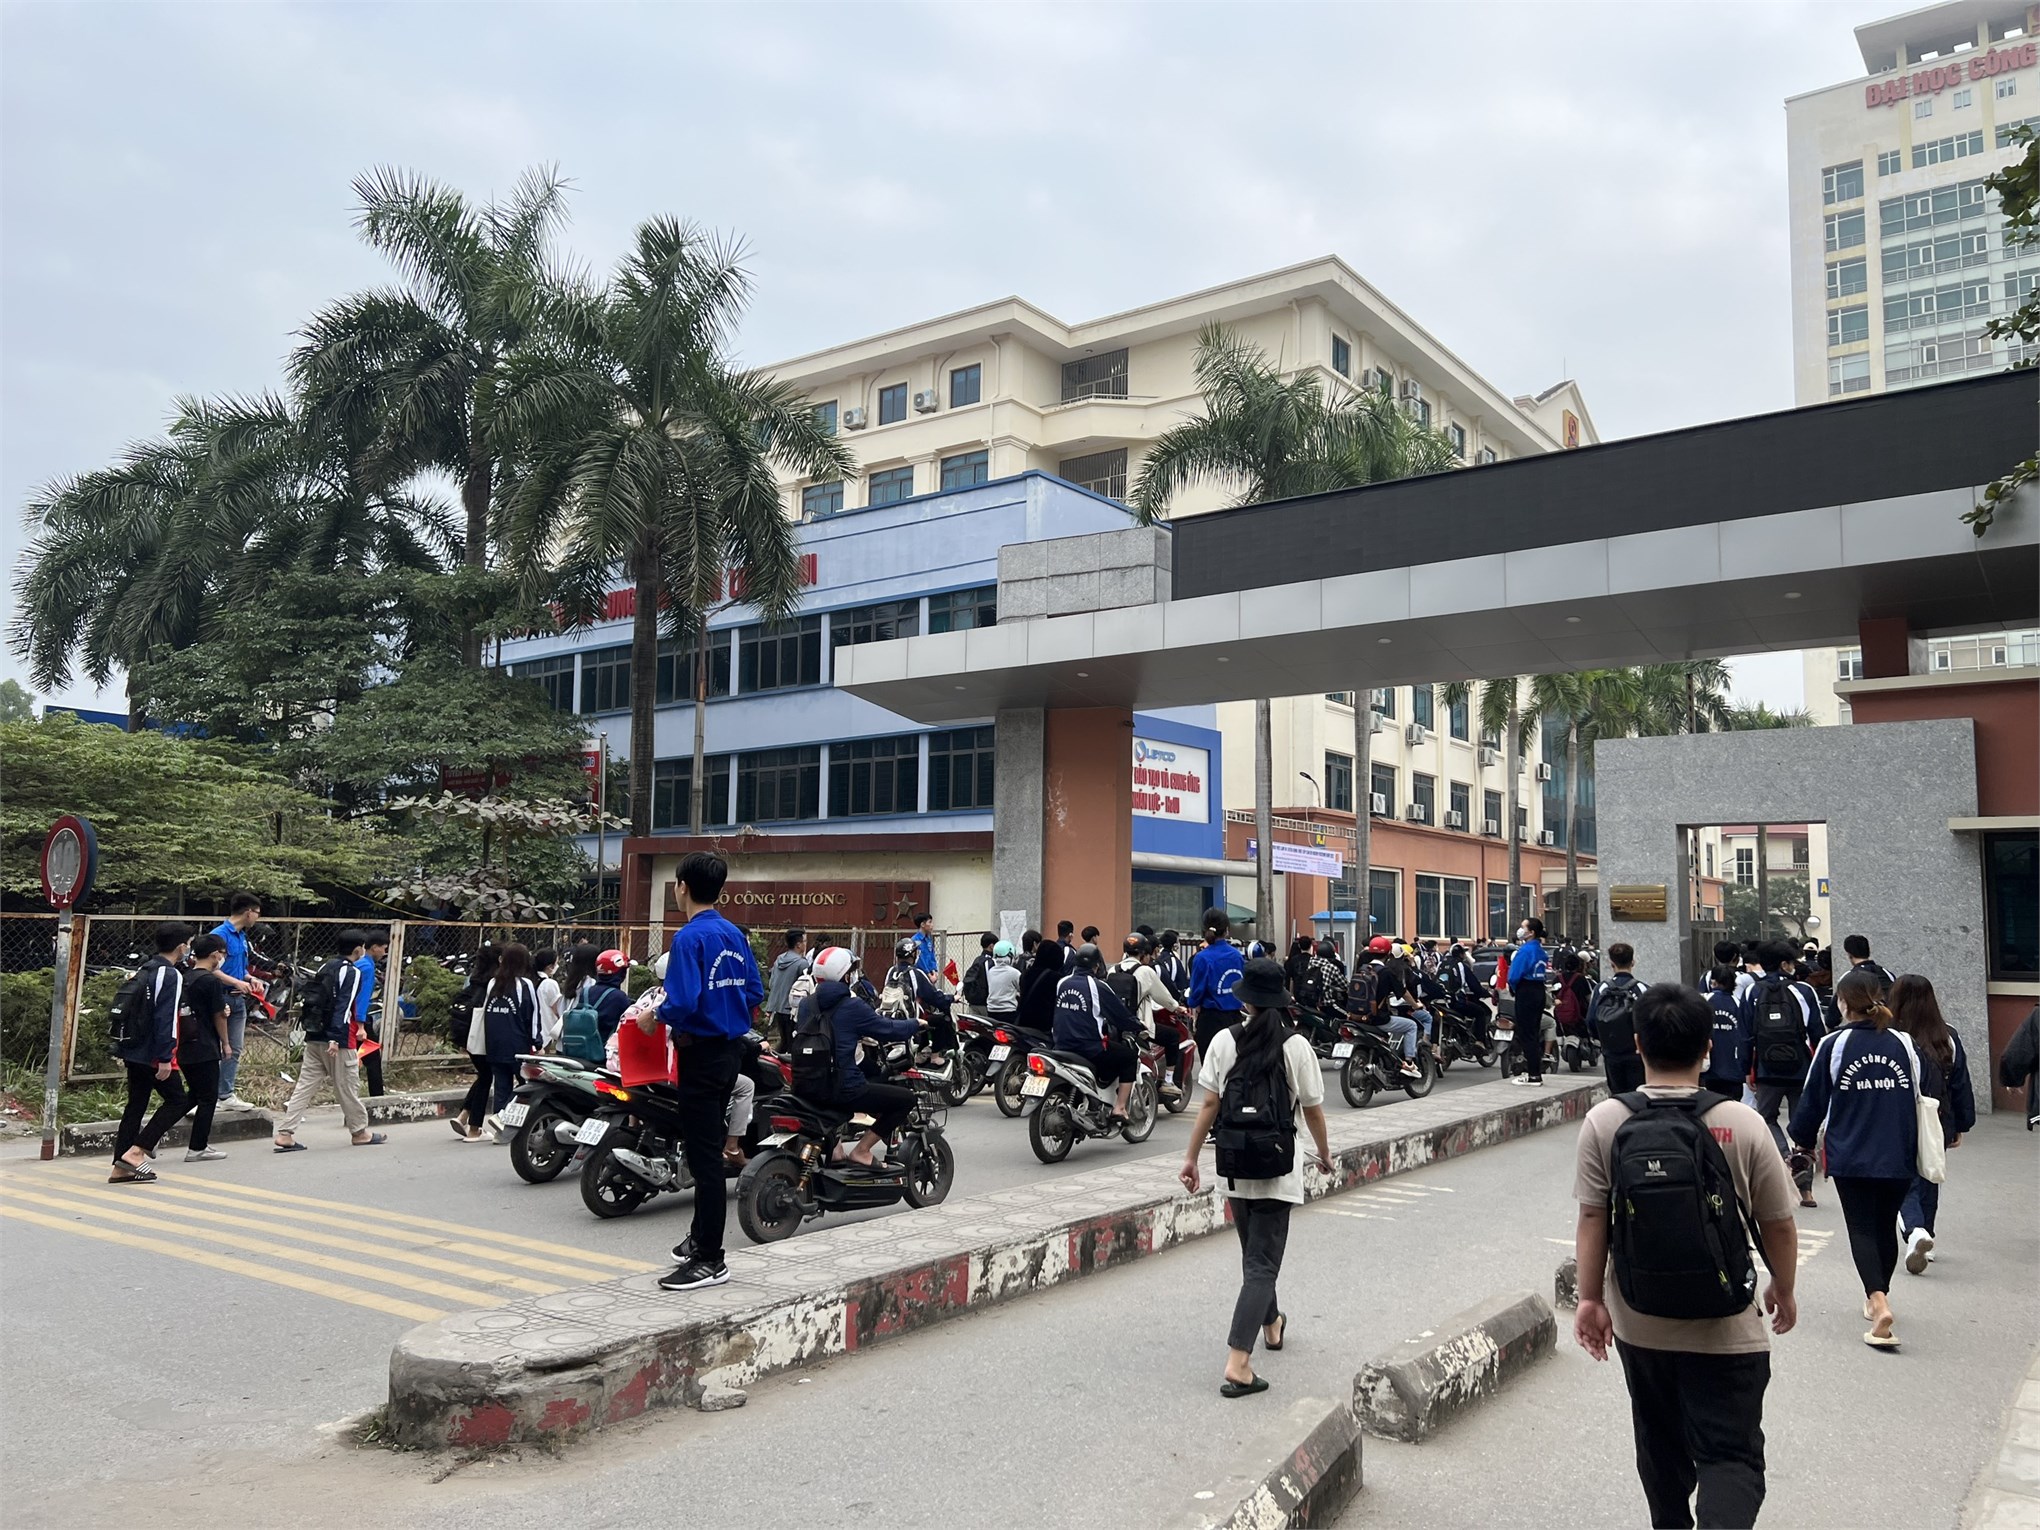 Mô hình cổng trường an toàn giao thông của Đoàn Thanh niên – Hội Sinh viên trường Đại học Công nghiệp Hà Nội